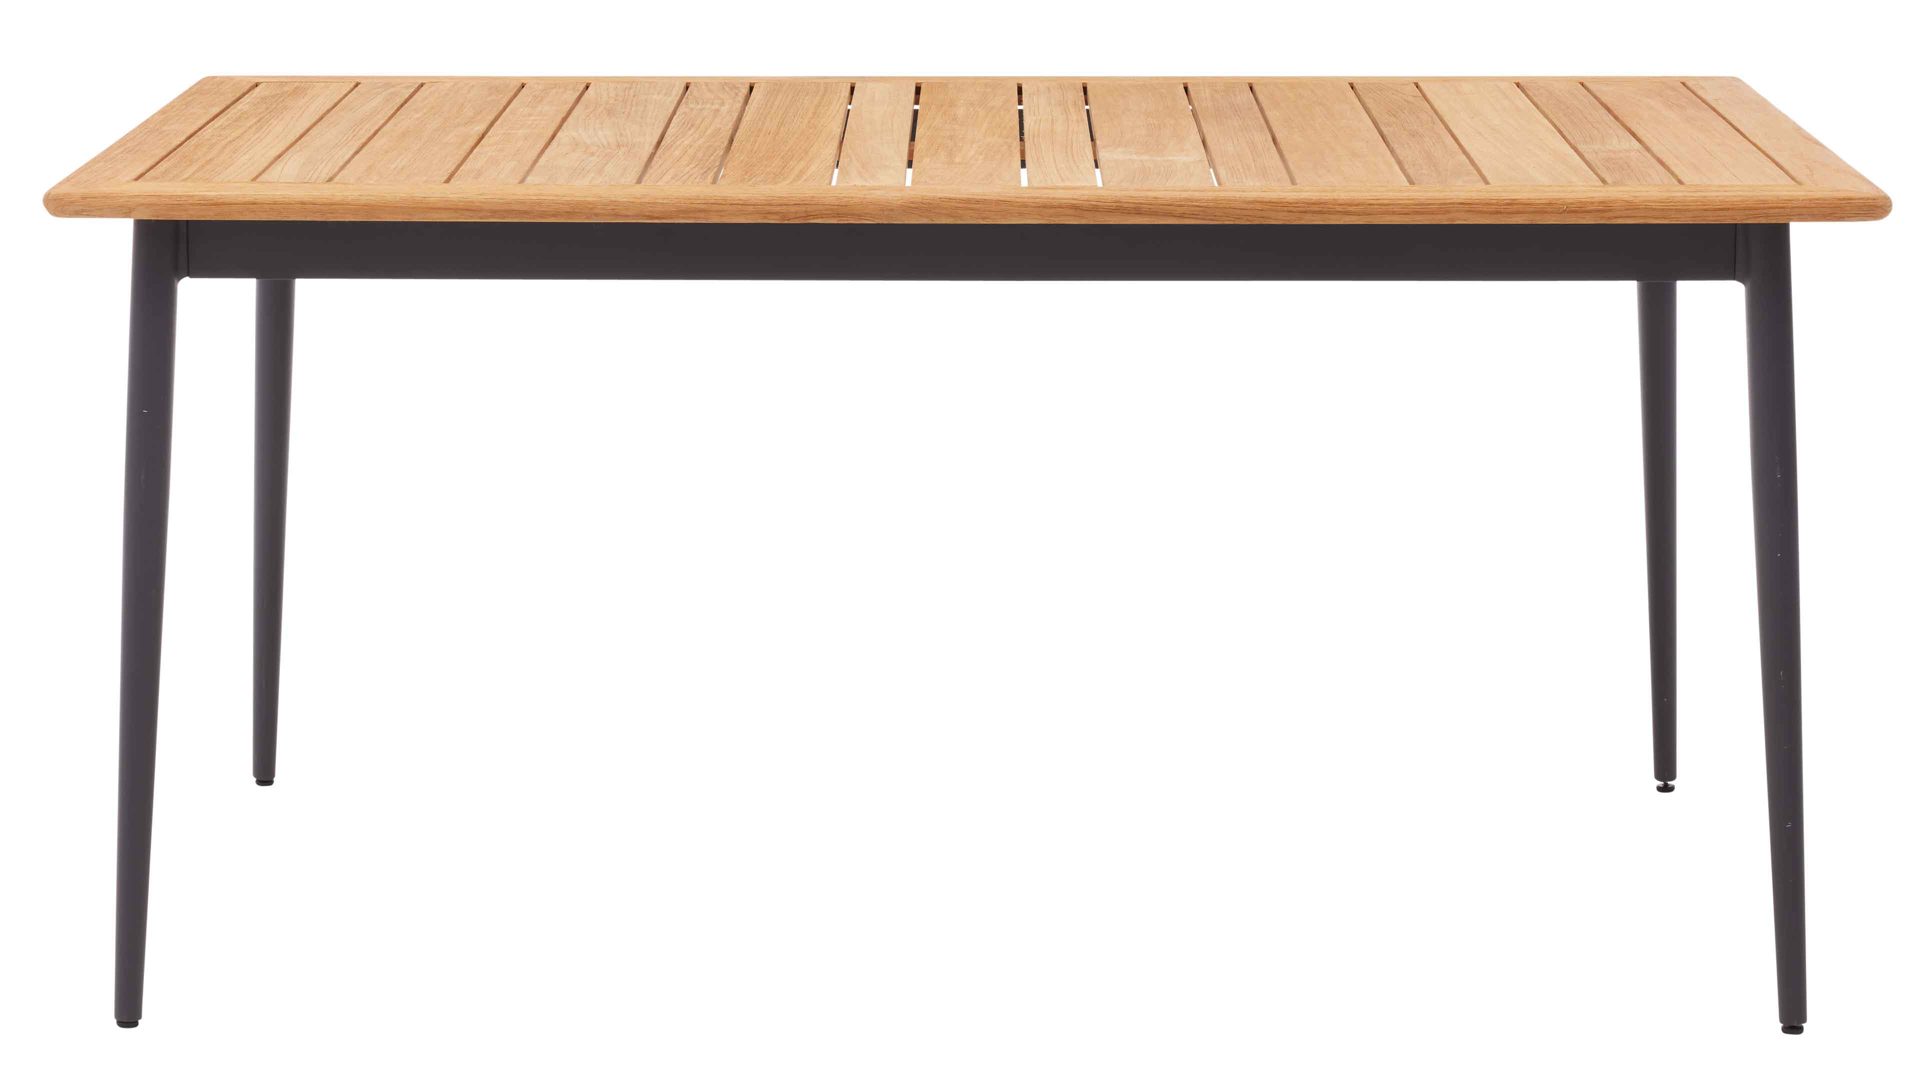 Gartentisch Interliving aus Holz in Holzfarben Interliving Gartenmöbel Serie 7001 – Tisch Teakholz & Aluminium - ca. 260 x 95 cm